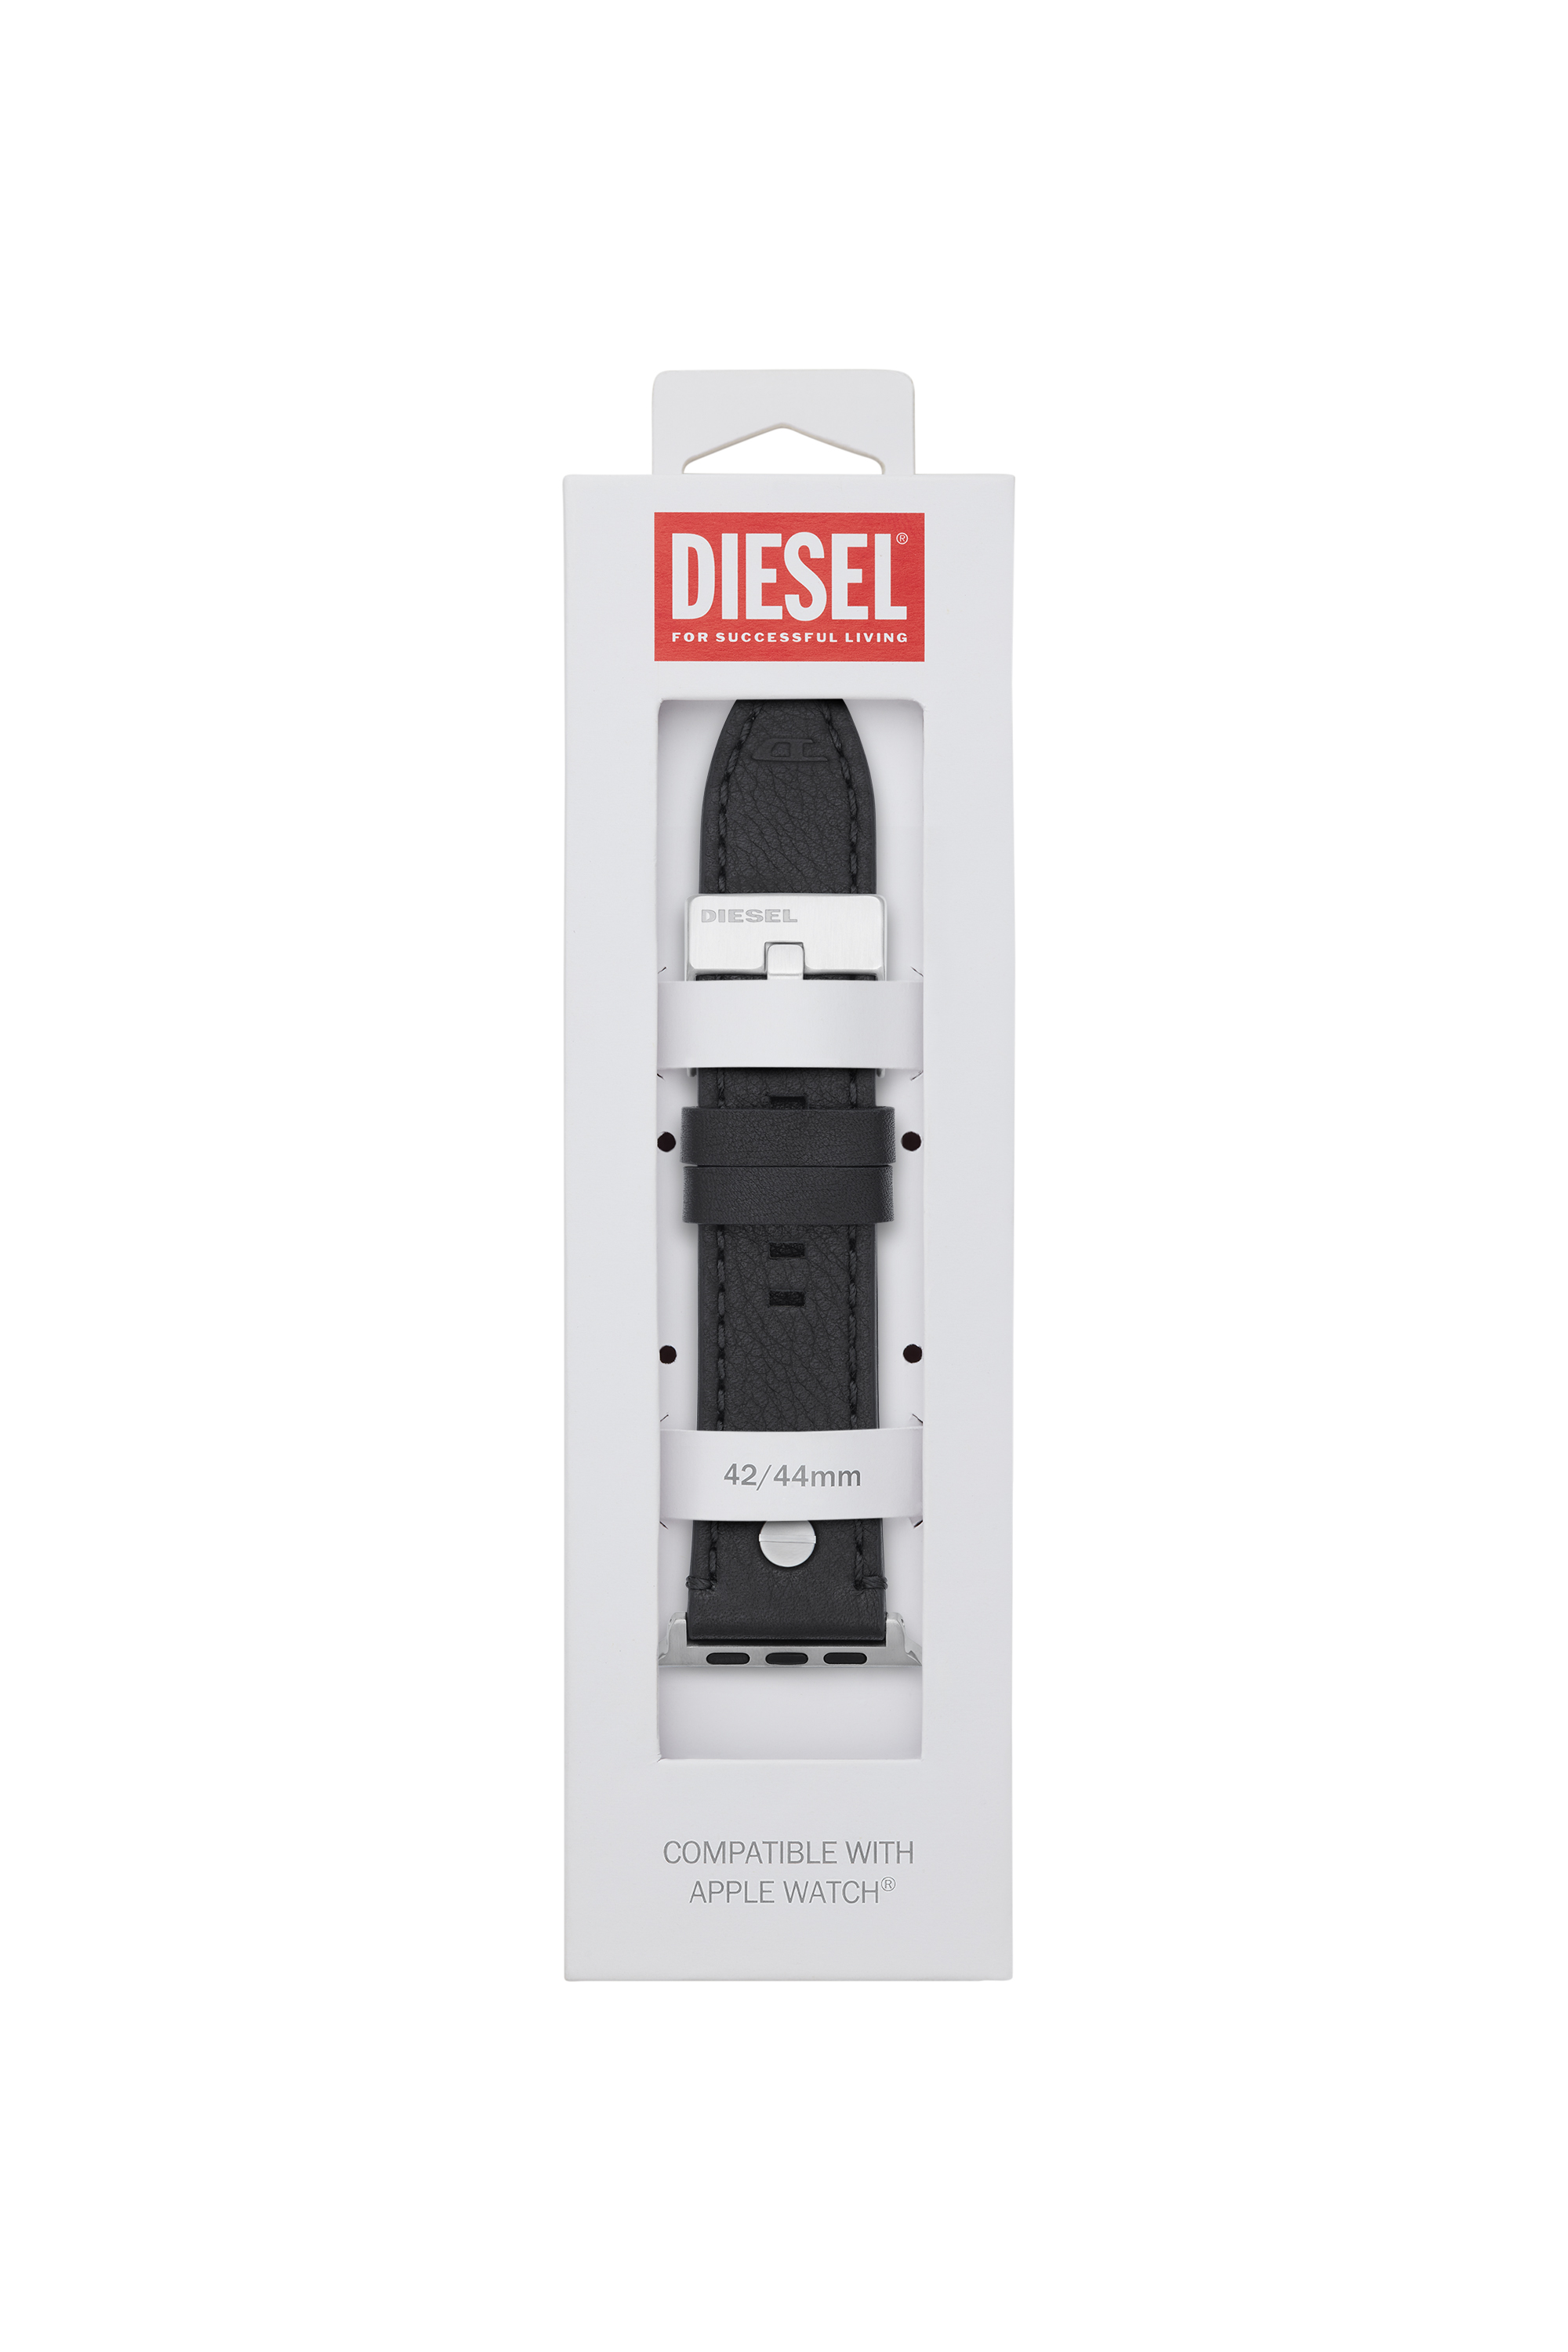 Diesel - DSS001, Black - Image 2